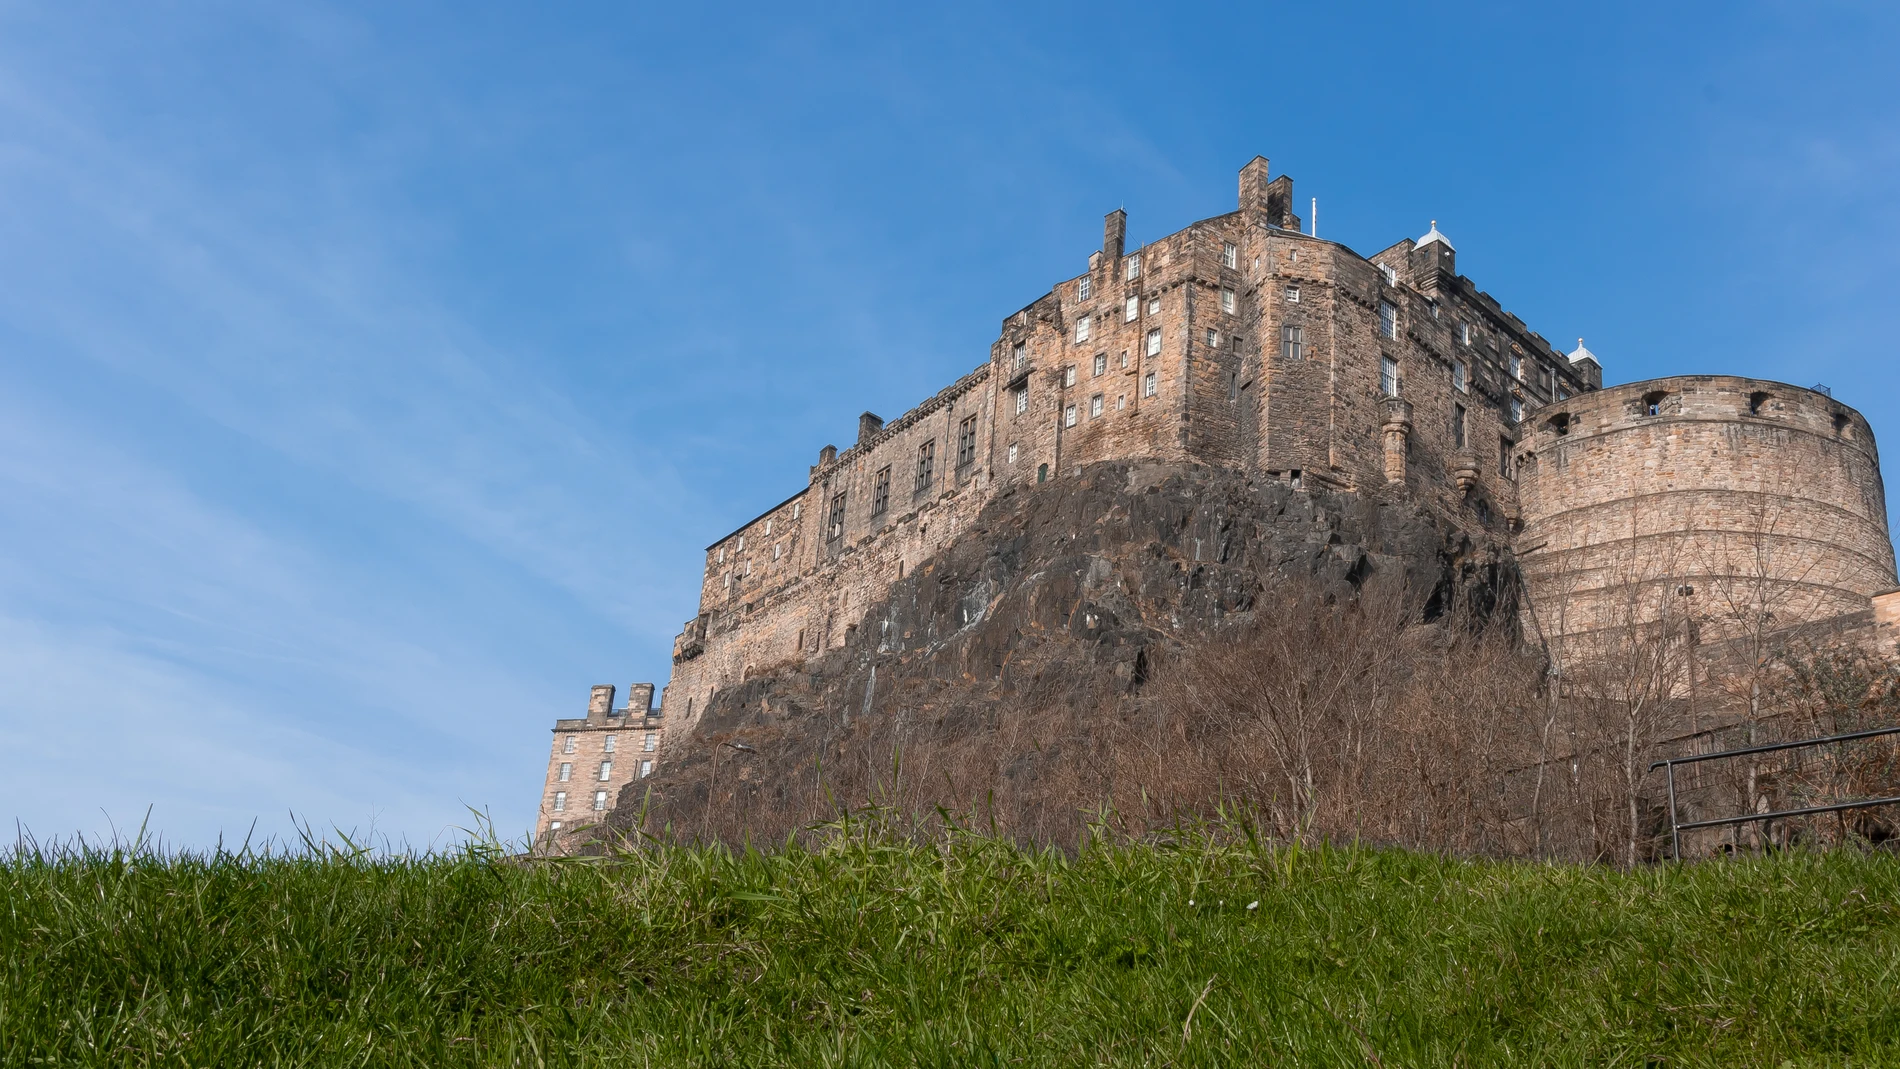 El castillo de Edimburgo tiene sus orígenes en el siglo XII